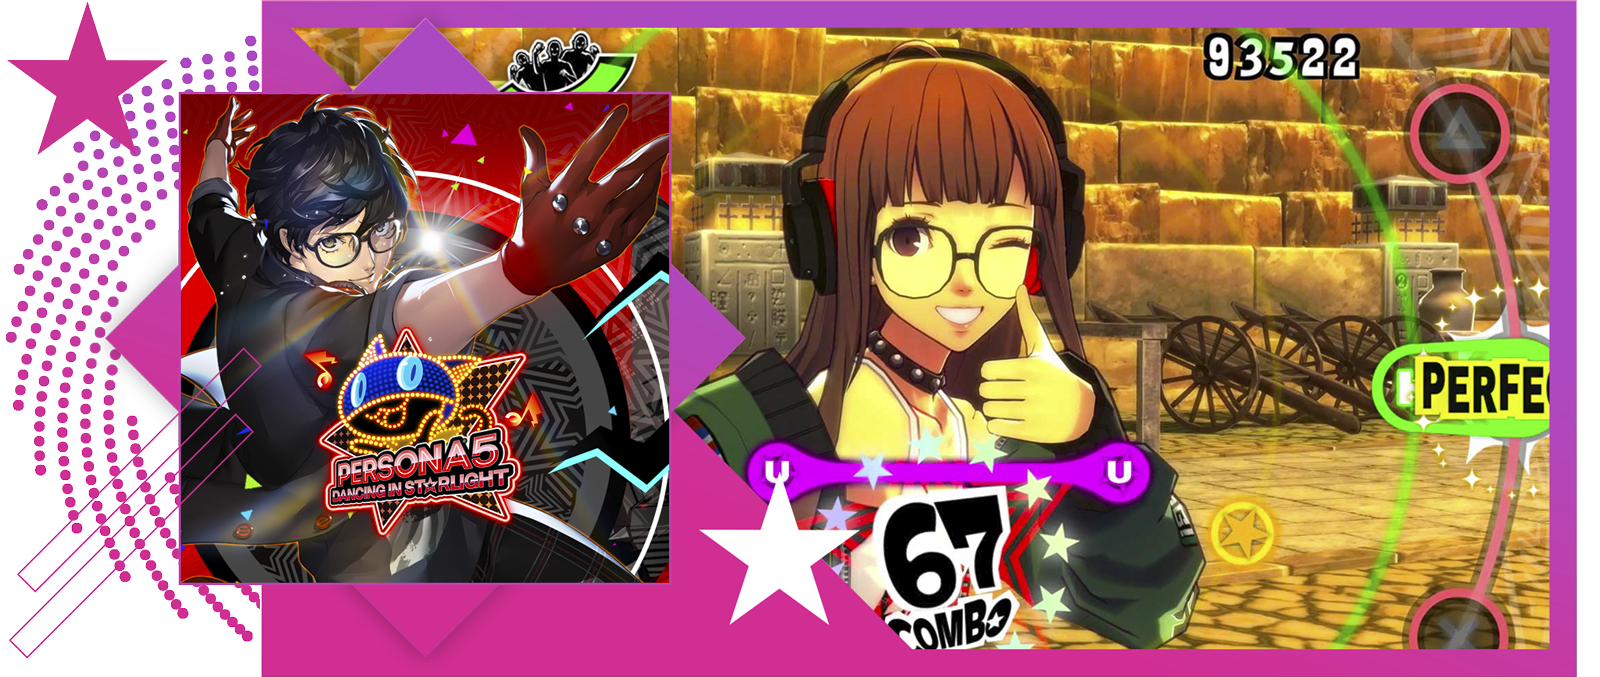 Image de présentation des meilleurs jeux de rythme, avec des illustrations et du gameplay clés de Persona 5. Dancing in Starlight.